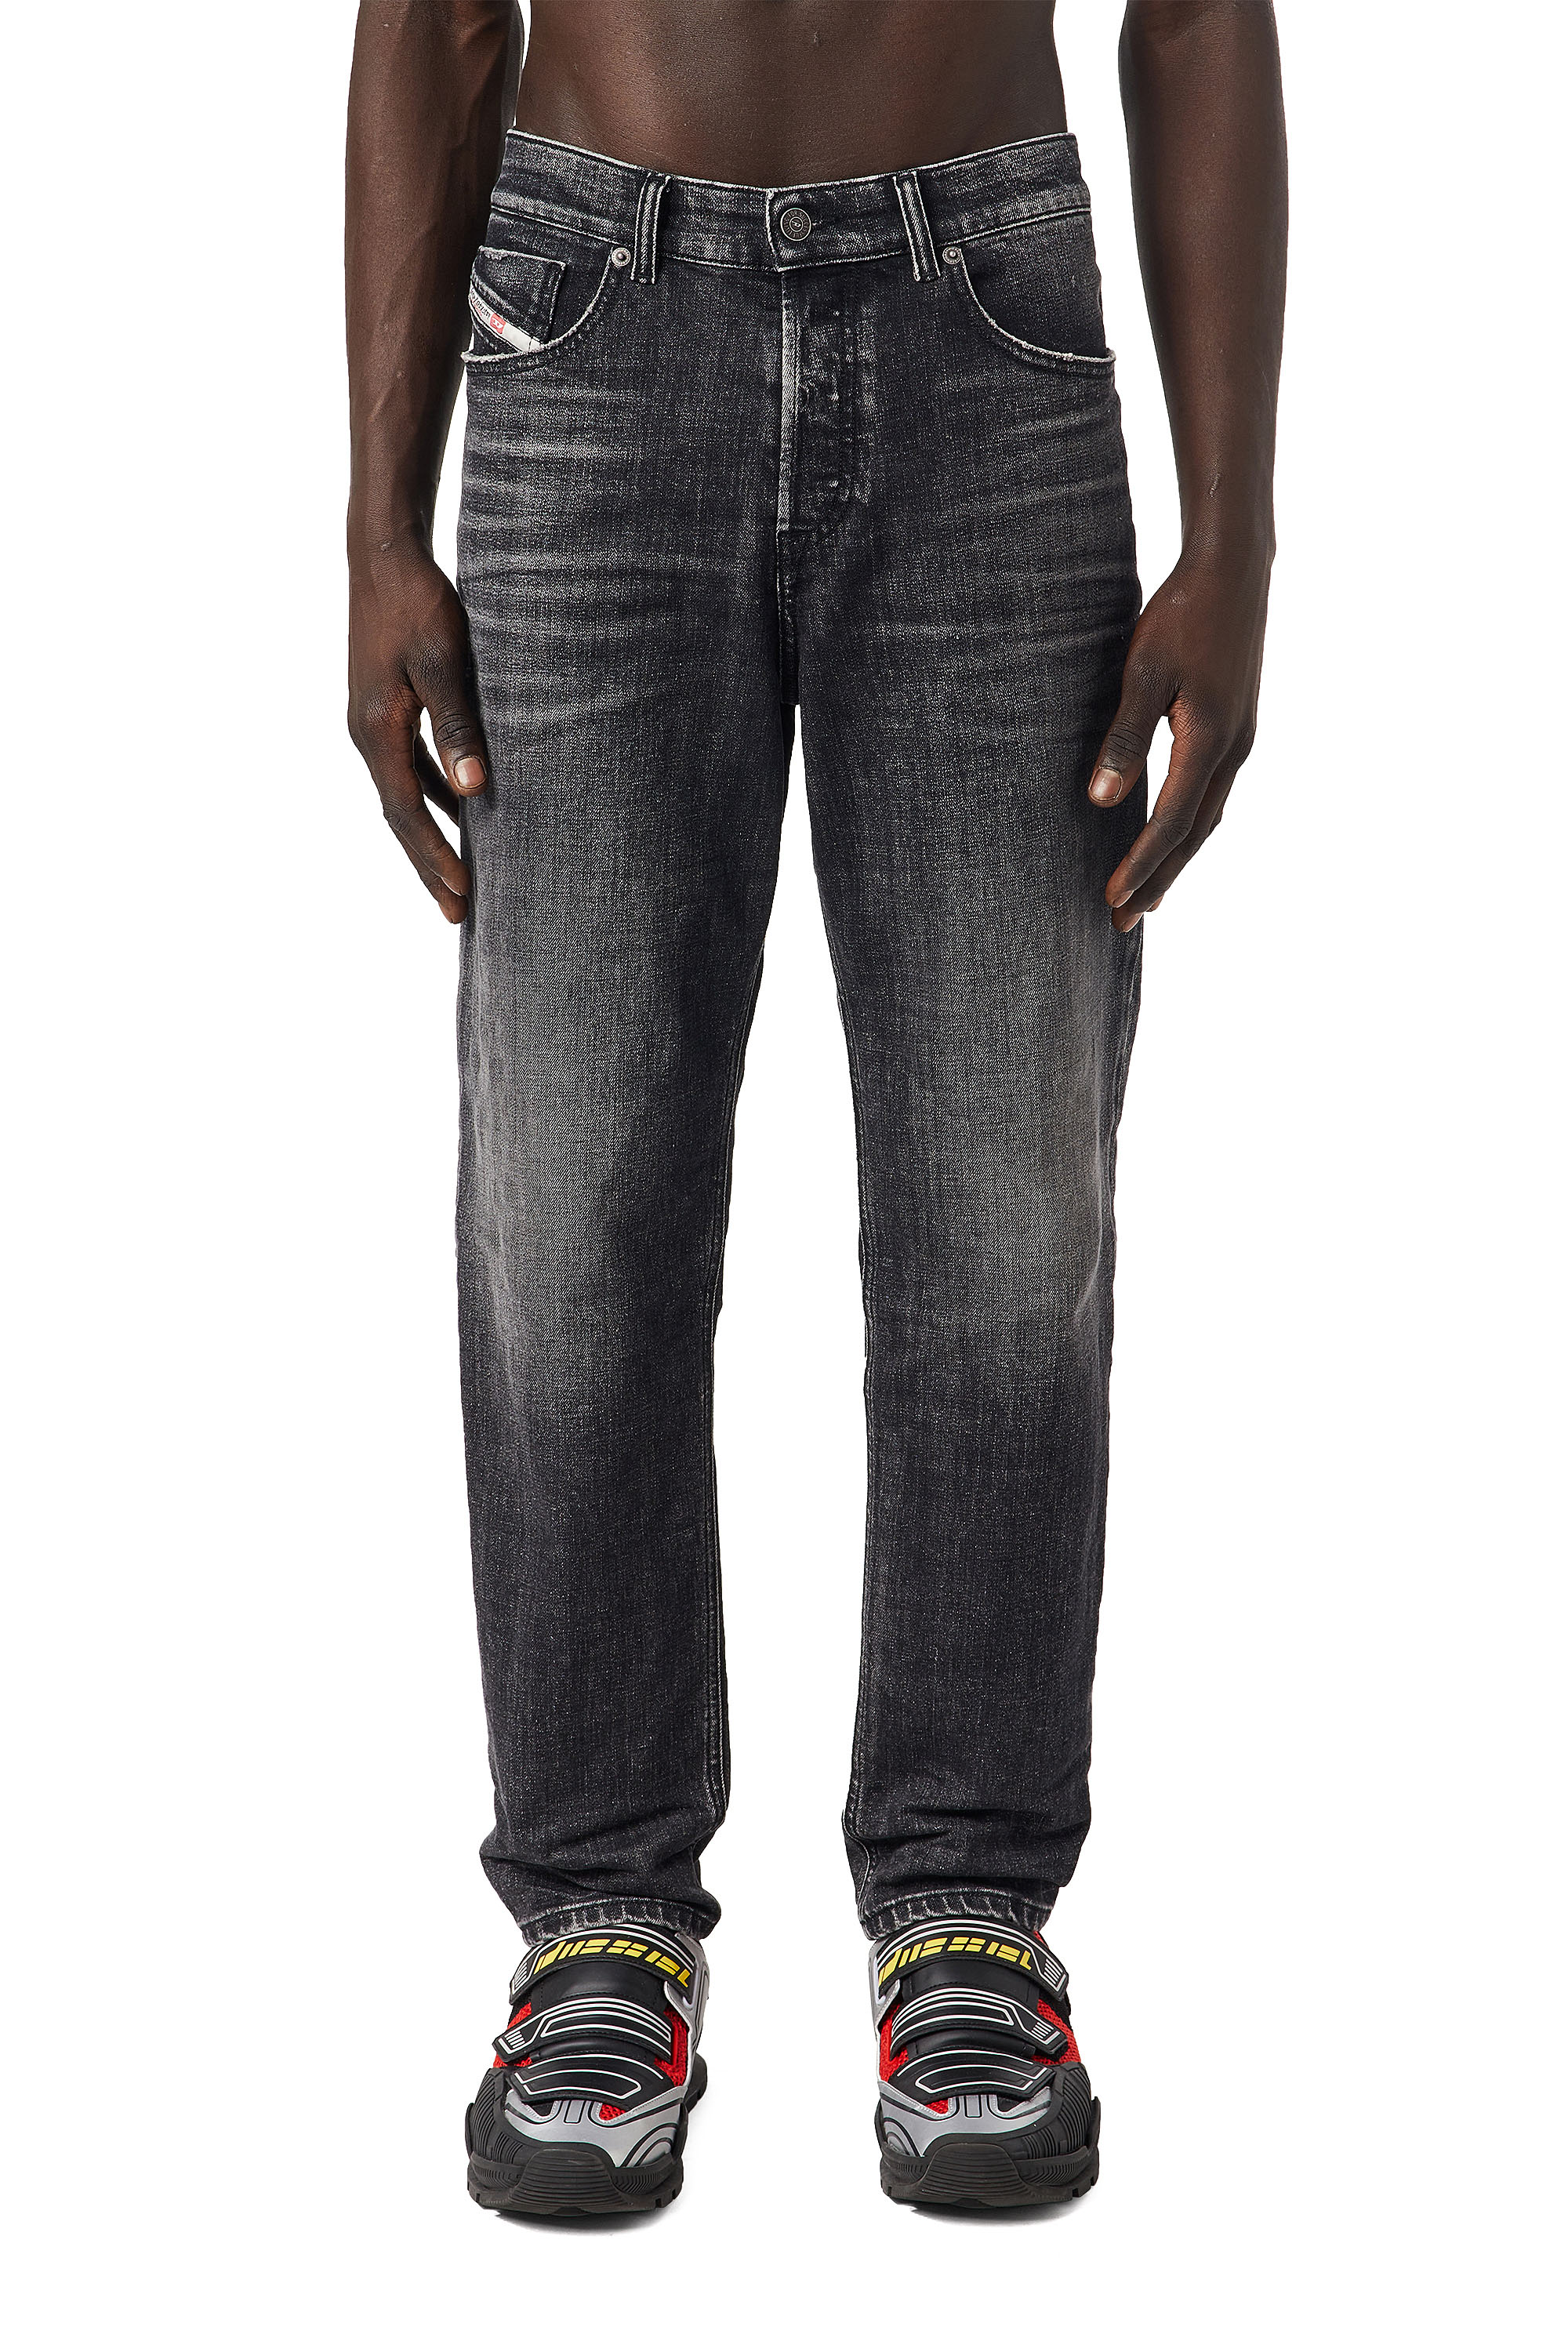 Diesel jeans herren schwarz - Bewundern Sie dem Liebling der Experten